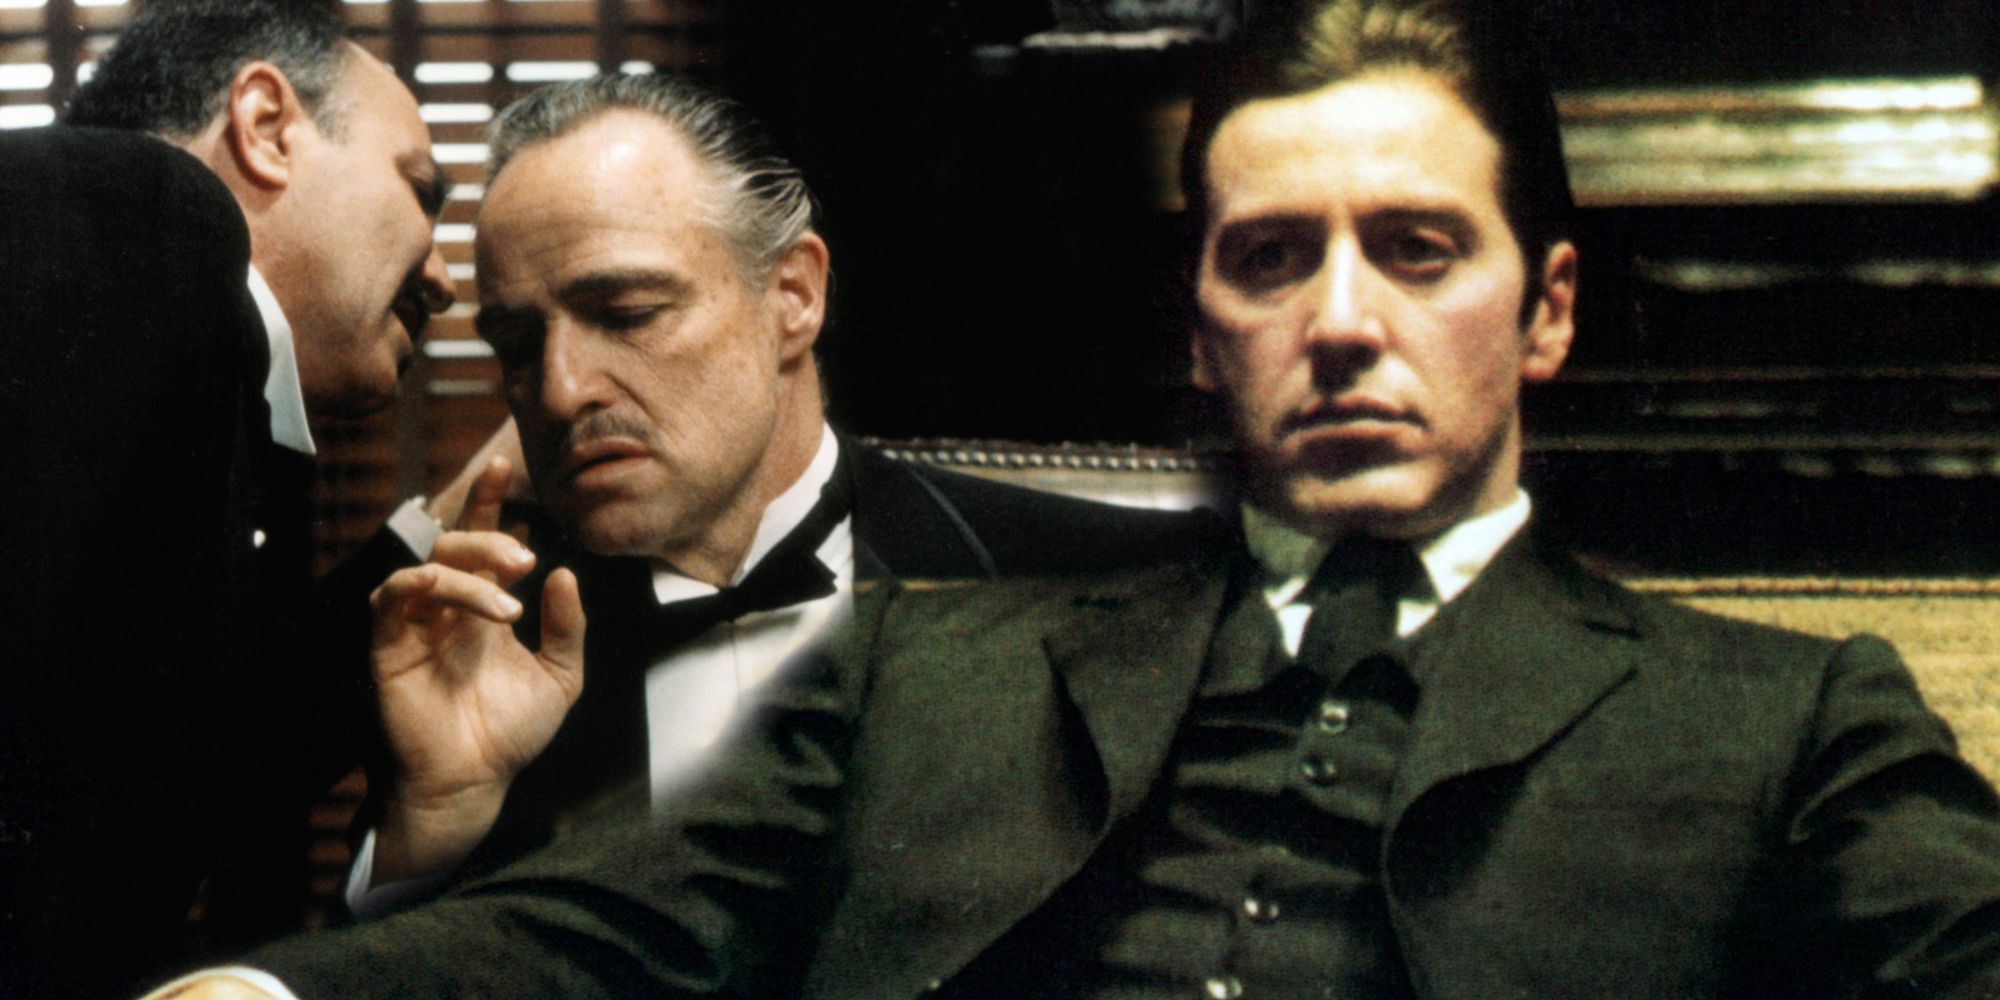 Immagine miscelata di Michael Corleone seduto nella Parte II mentre Vito sta parlando con qualcuno nel Padrino